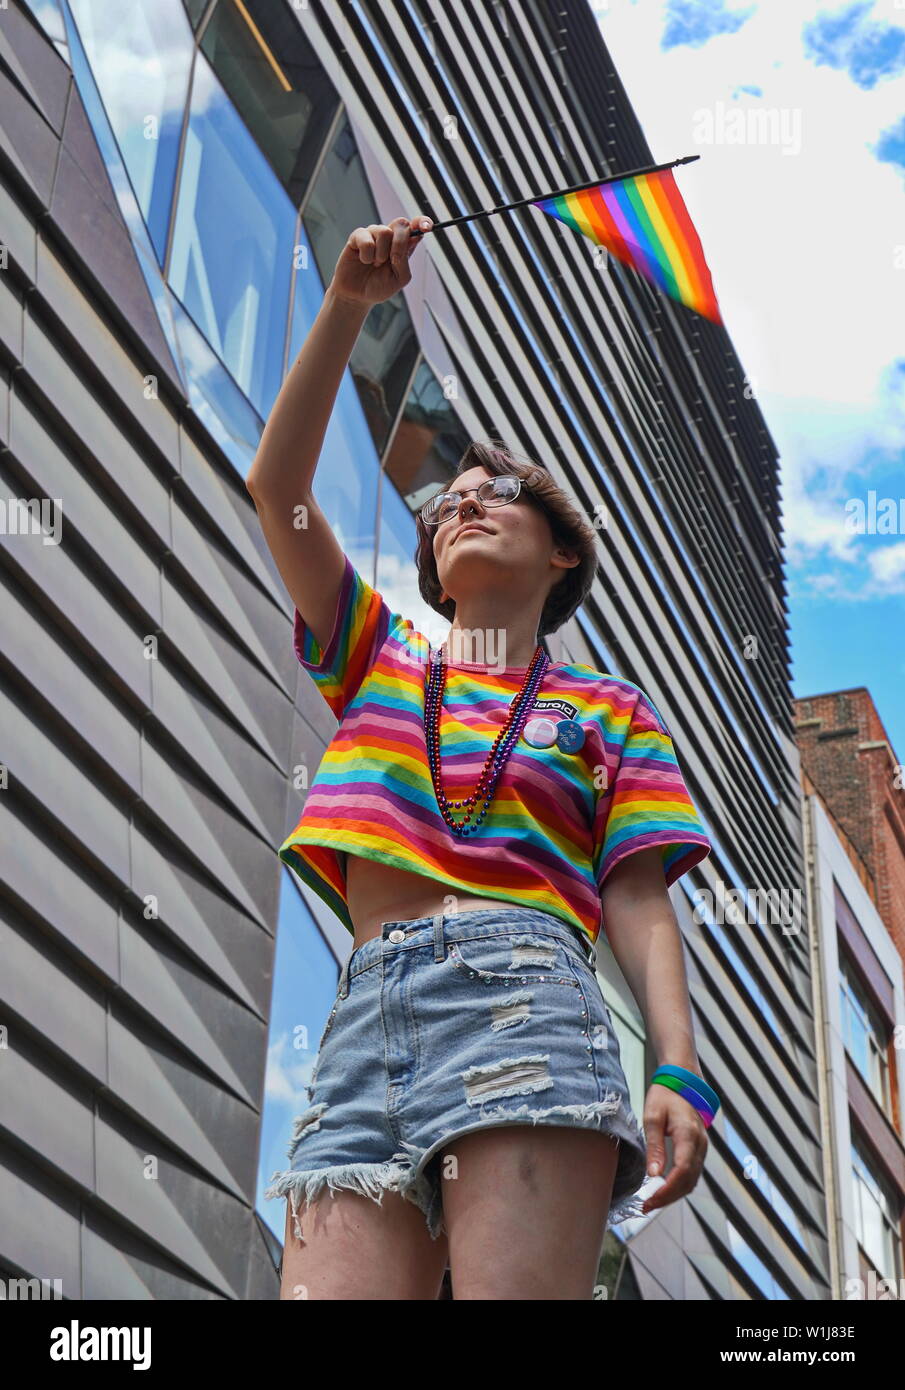 New York City, NY / USA - 20 juin 2019 : Young caucasian personne vagues du drapeau arc-en-ciel de la fierté à 2019 Banque D'Images